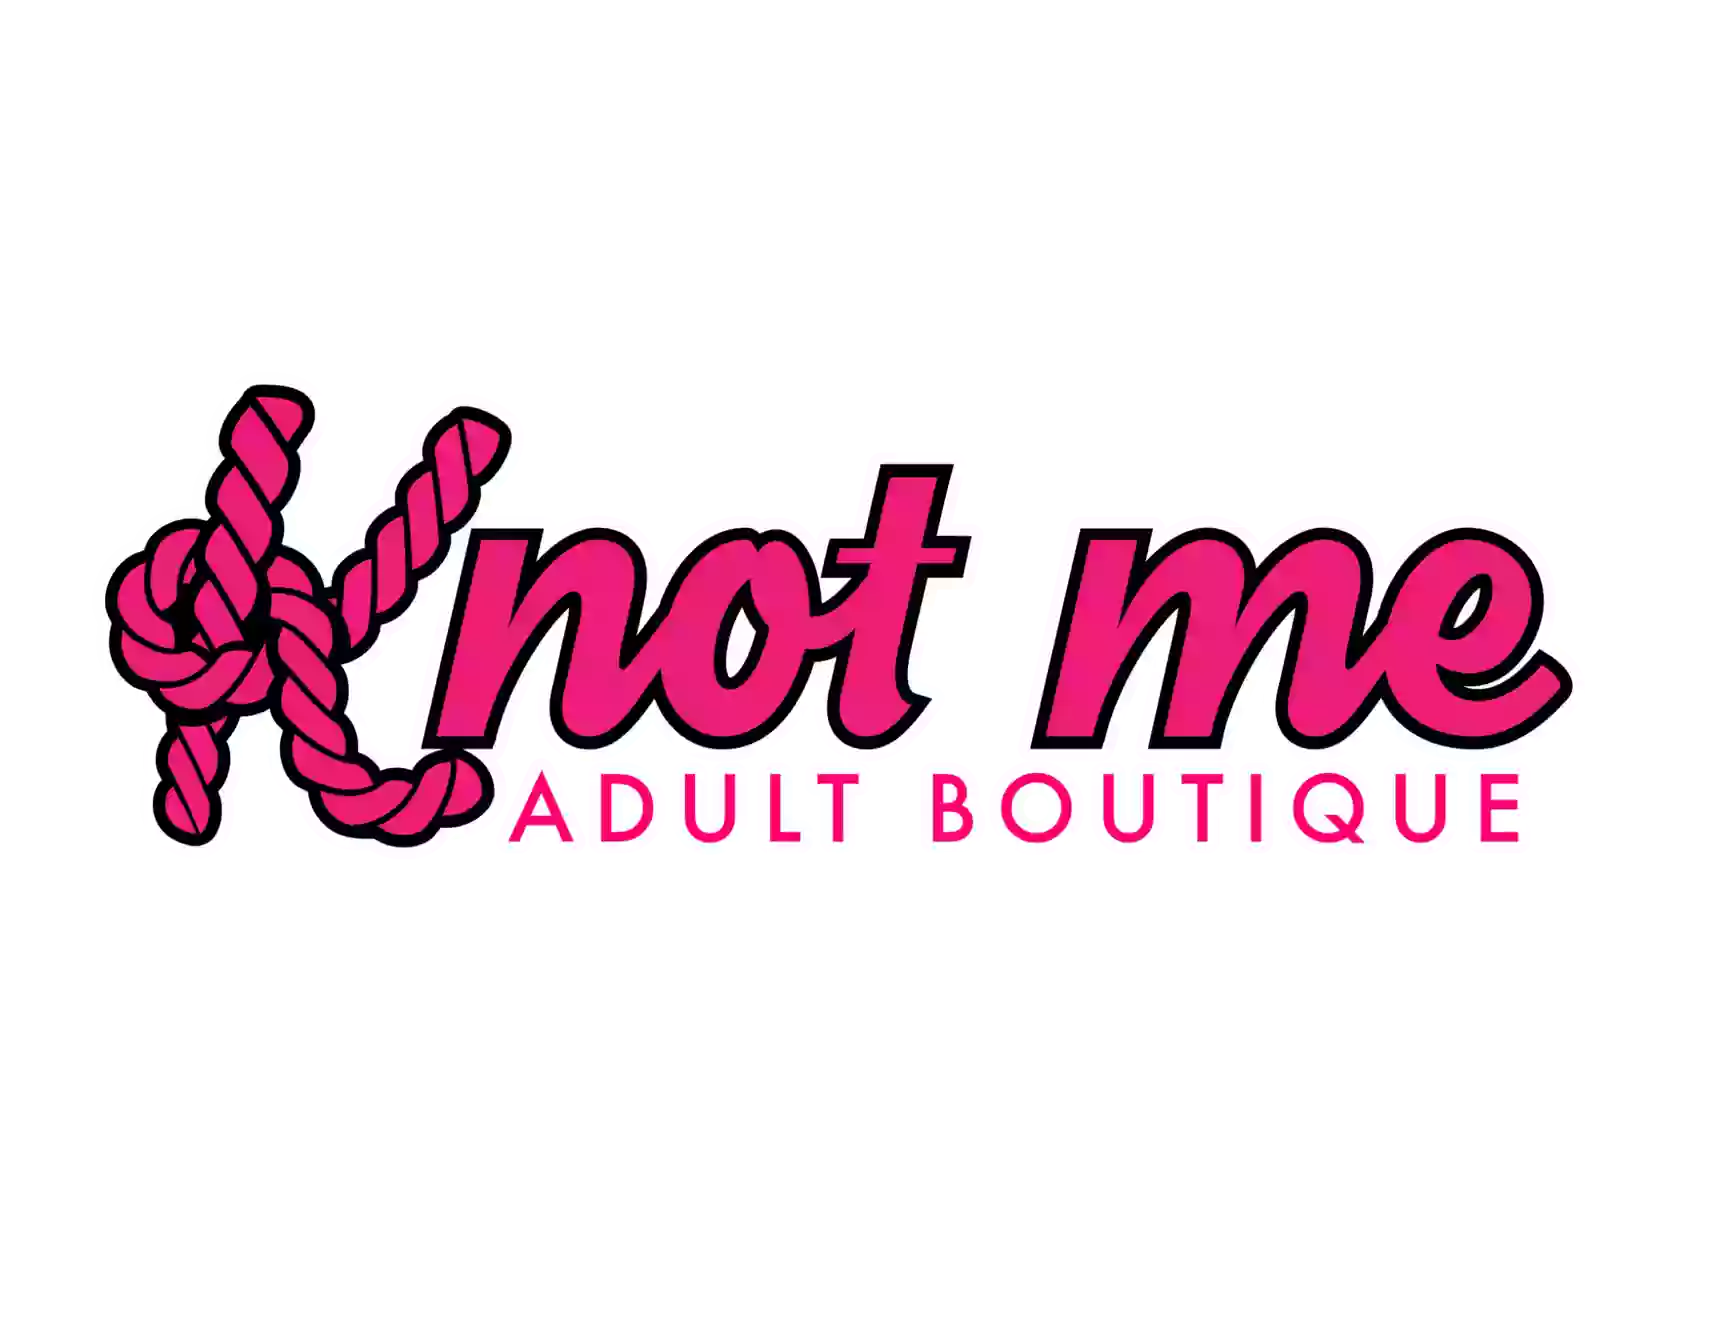 Knot Me Adult Boutique